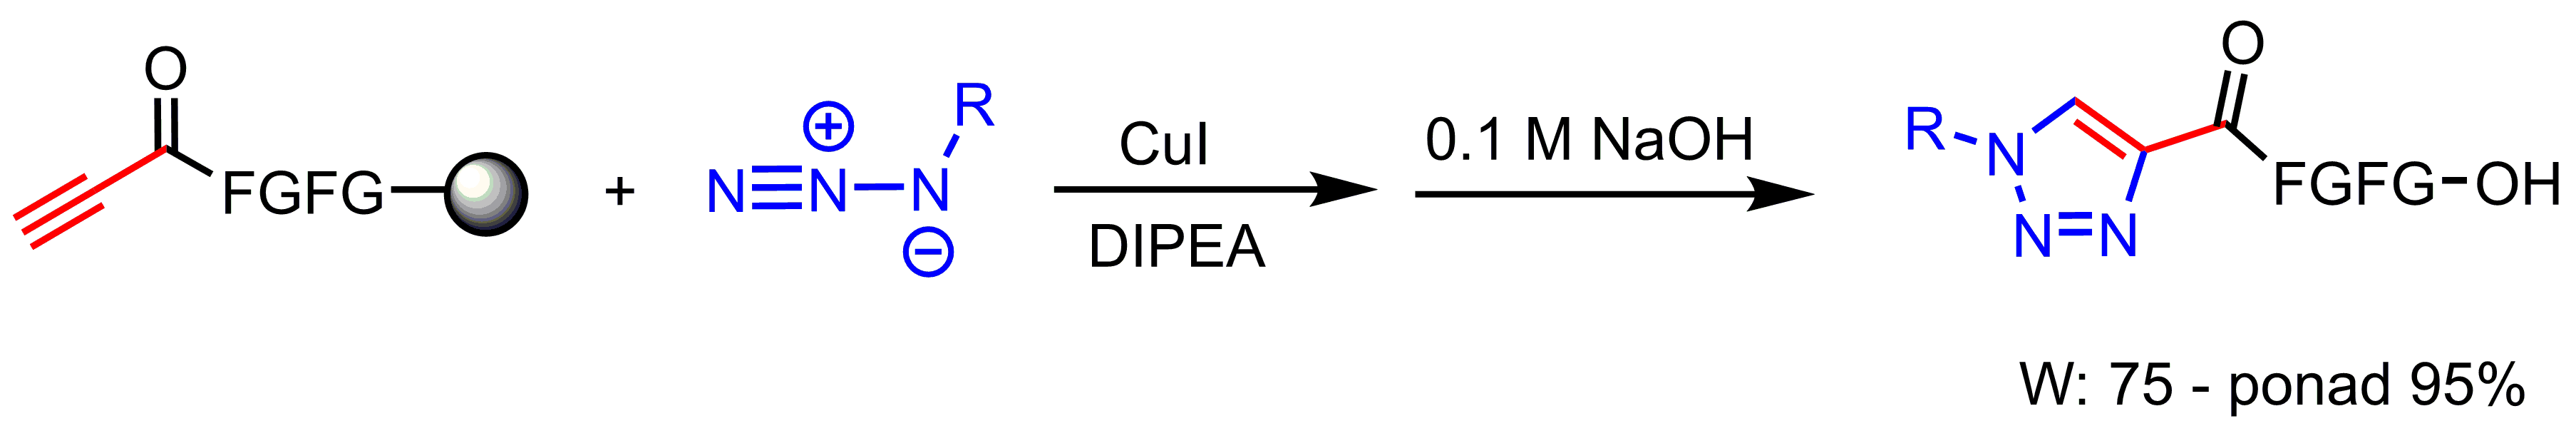 Praca Maldala, schemat reakcji chemicznej